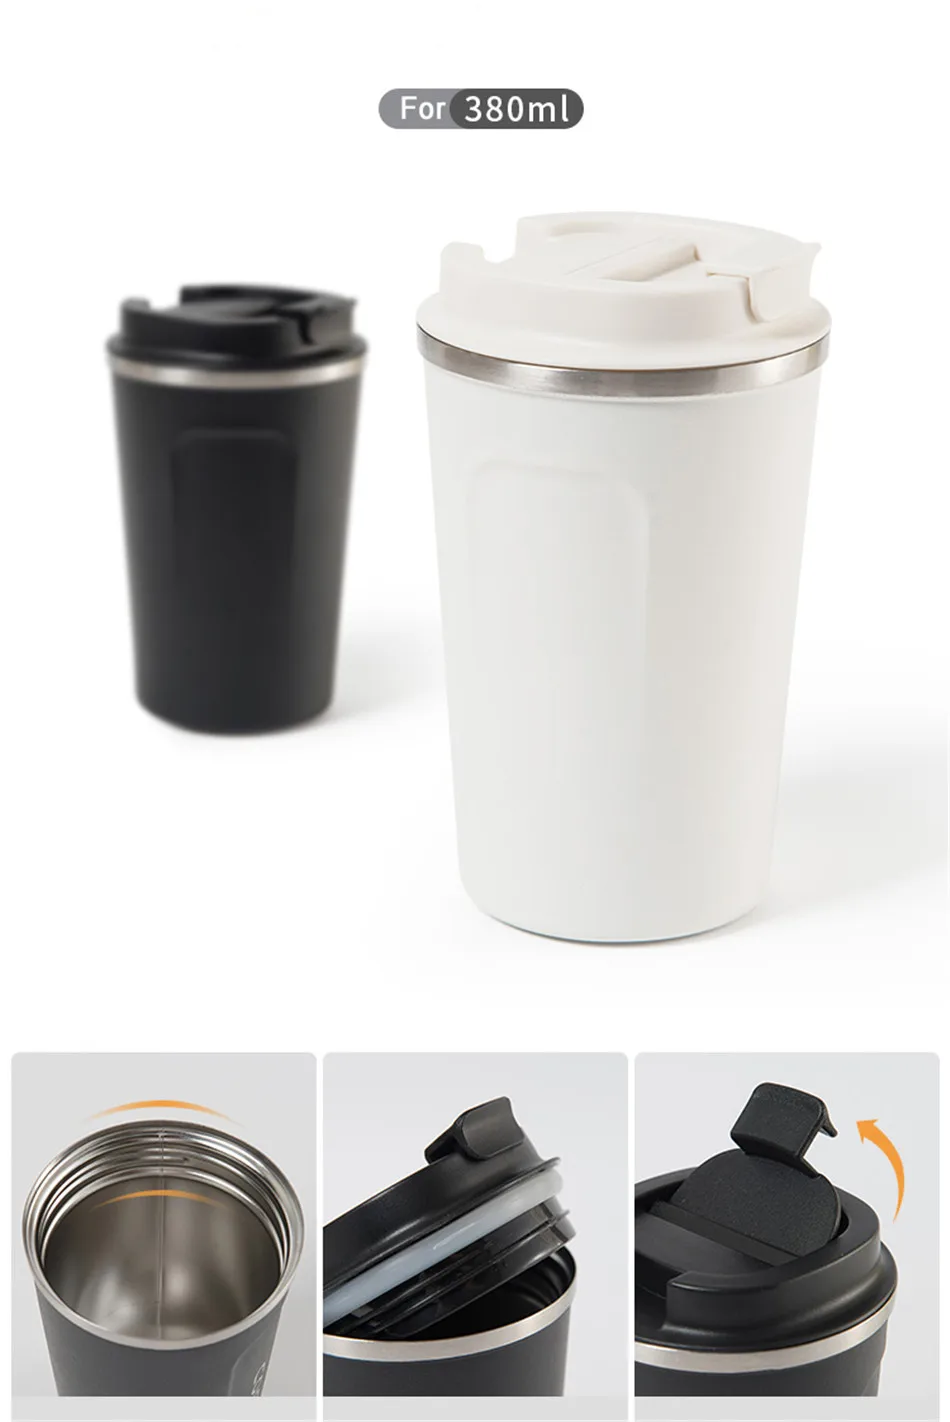 BAISPO, креативная кружка, кофейная чашка с крышкой, термо-складная бутылка для воды, чашка из нержавеющей стали, автомобильная чашка для путешествий, кофейная Термокружка для подарков